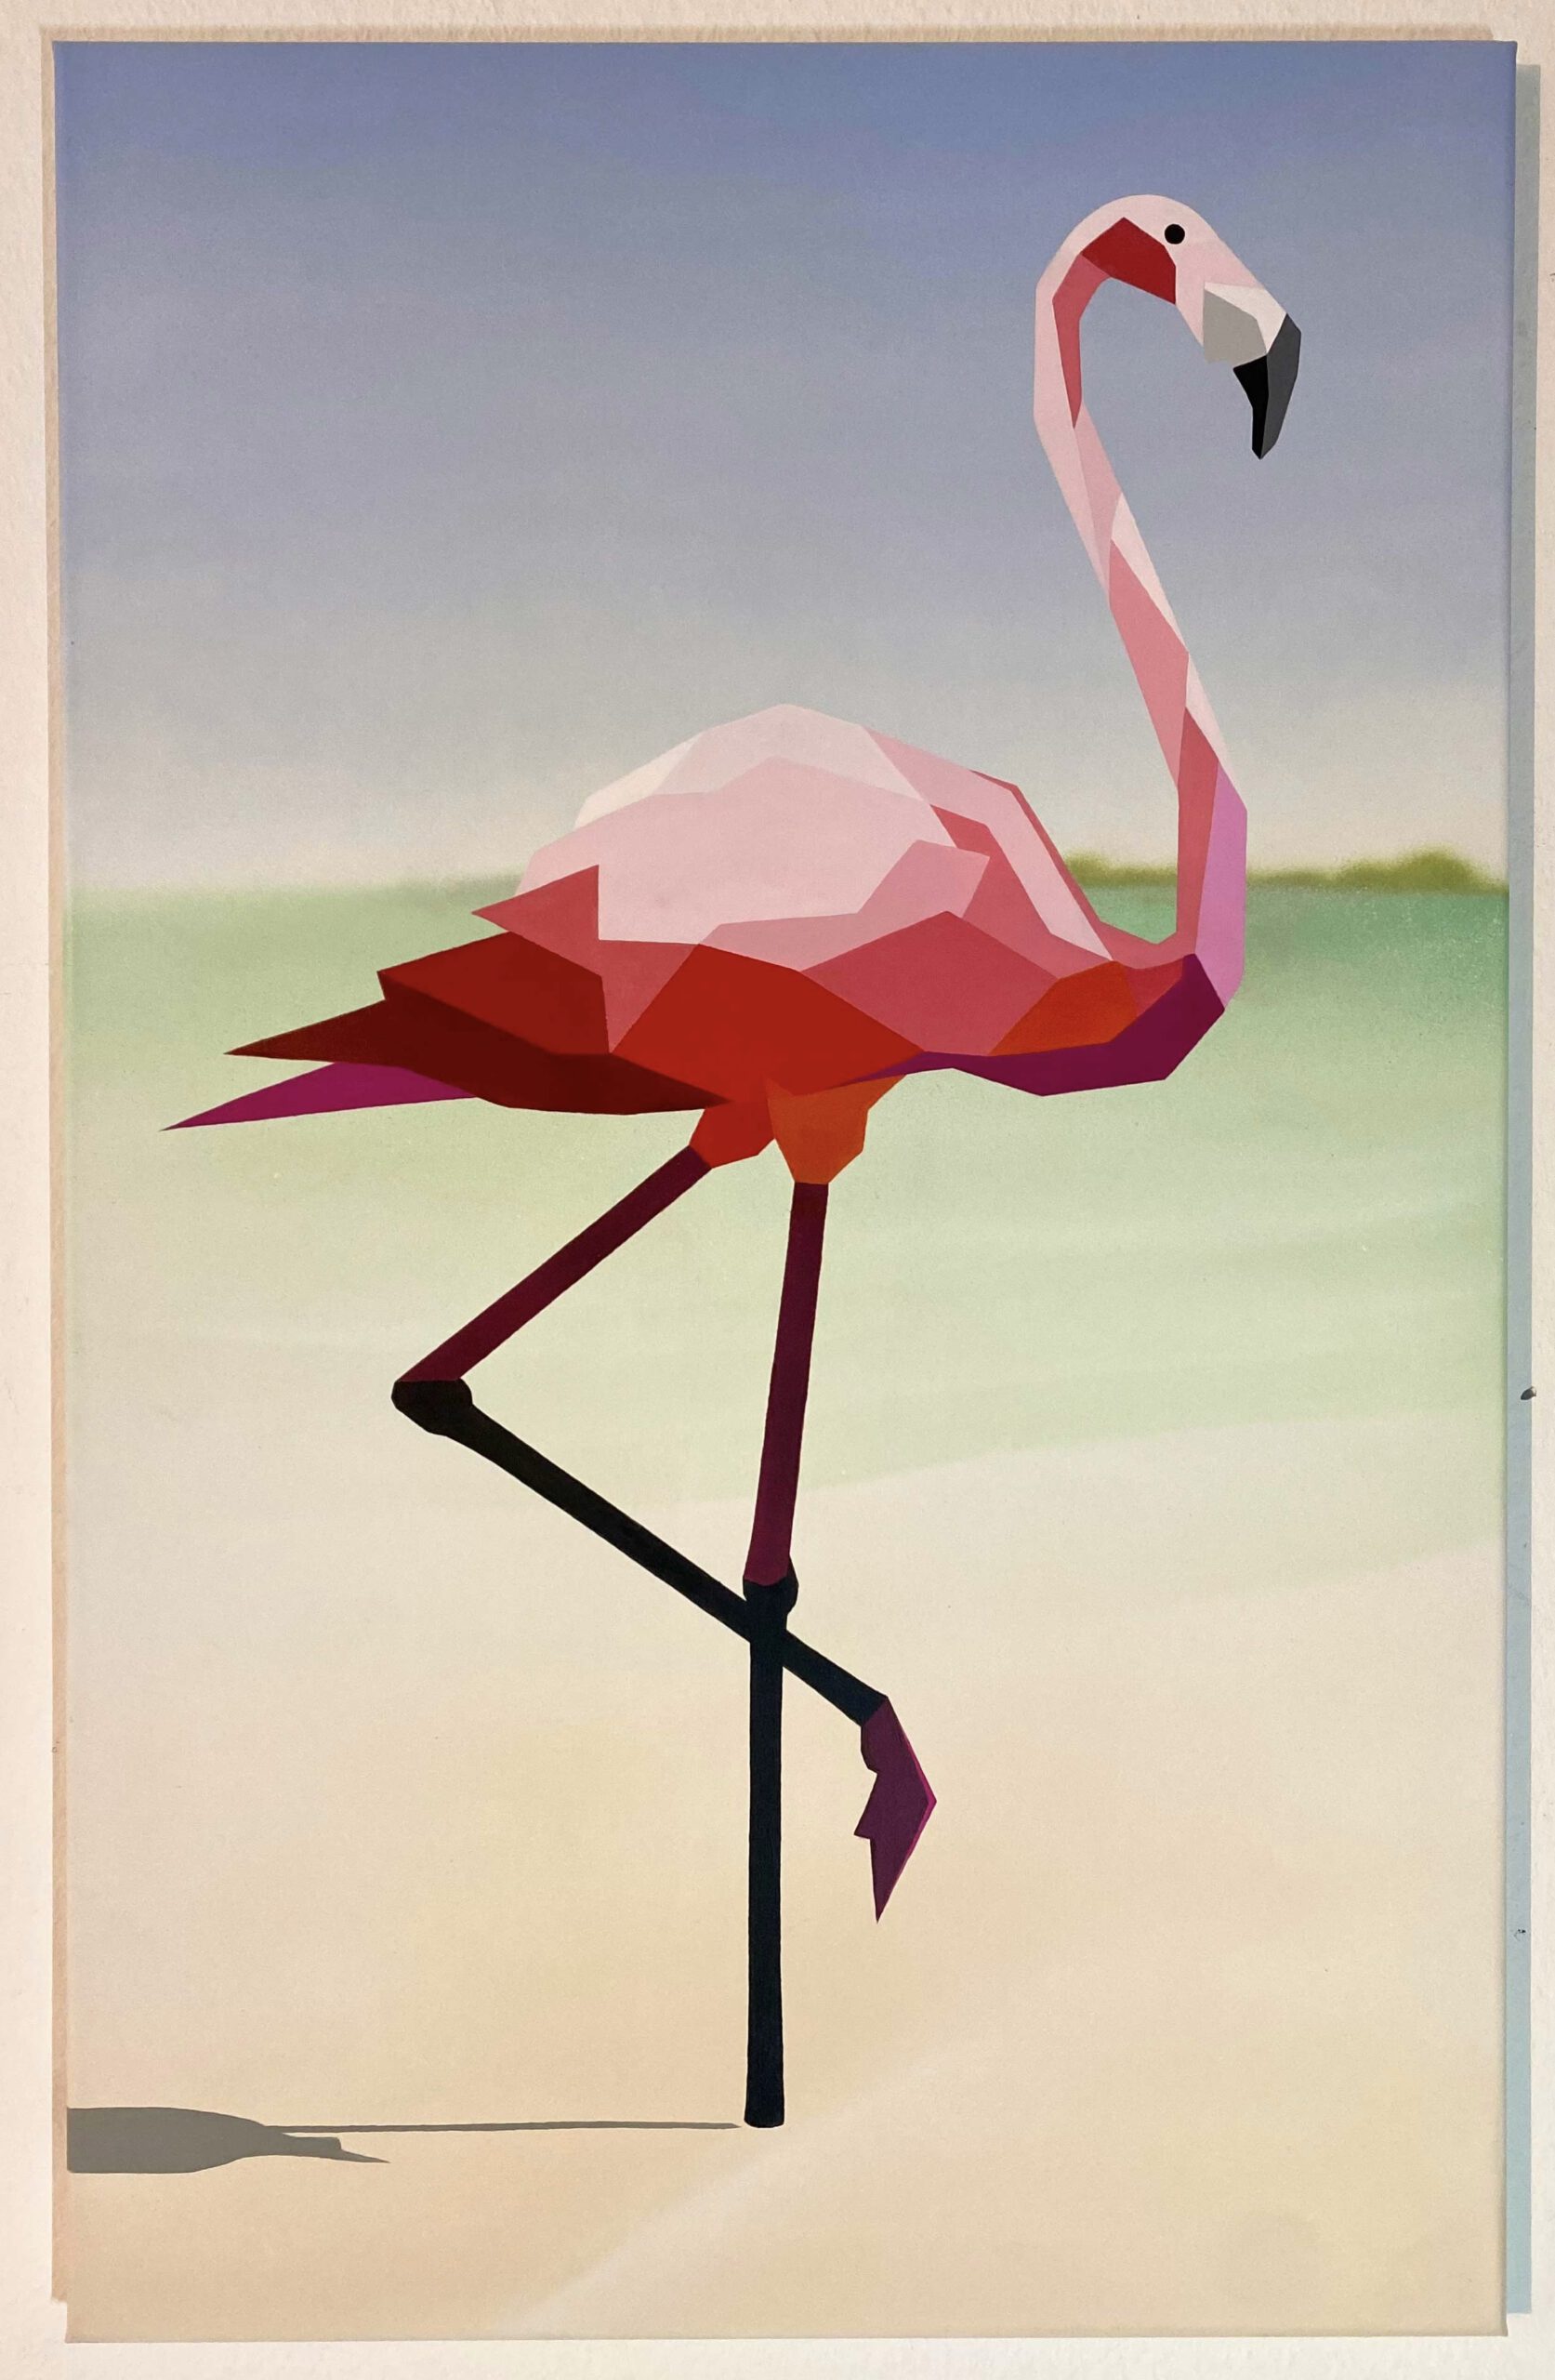 Flamingo“ 95 x 60 cm, Mixed media on canvas, Felix Jonas Rieger 2022